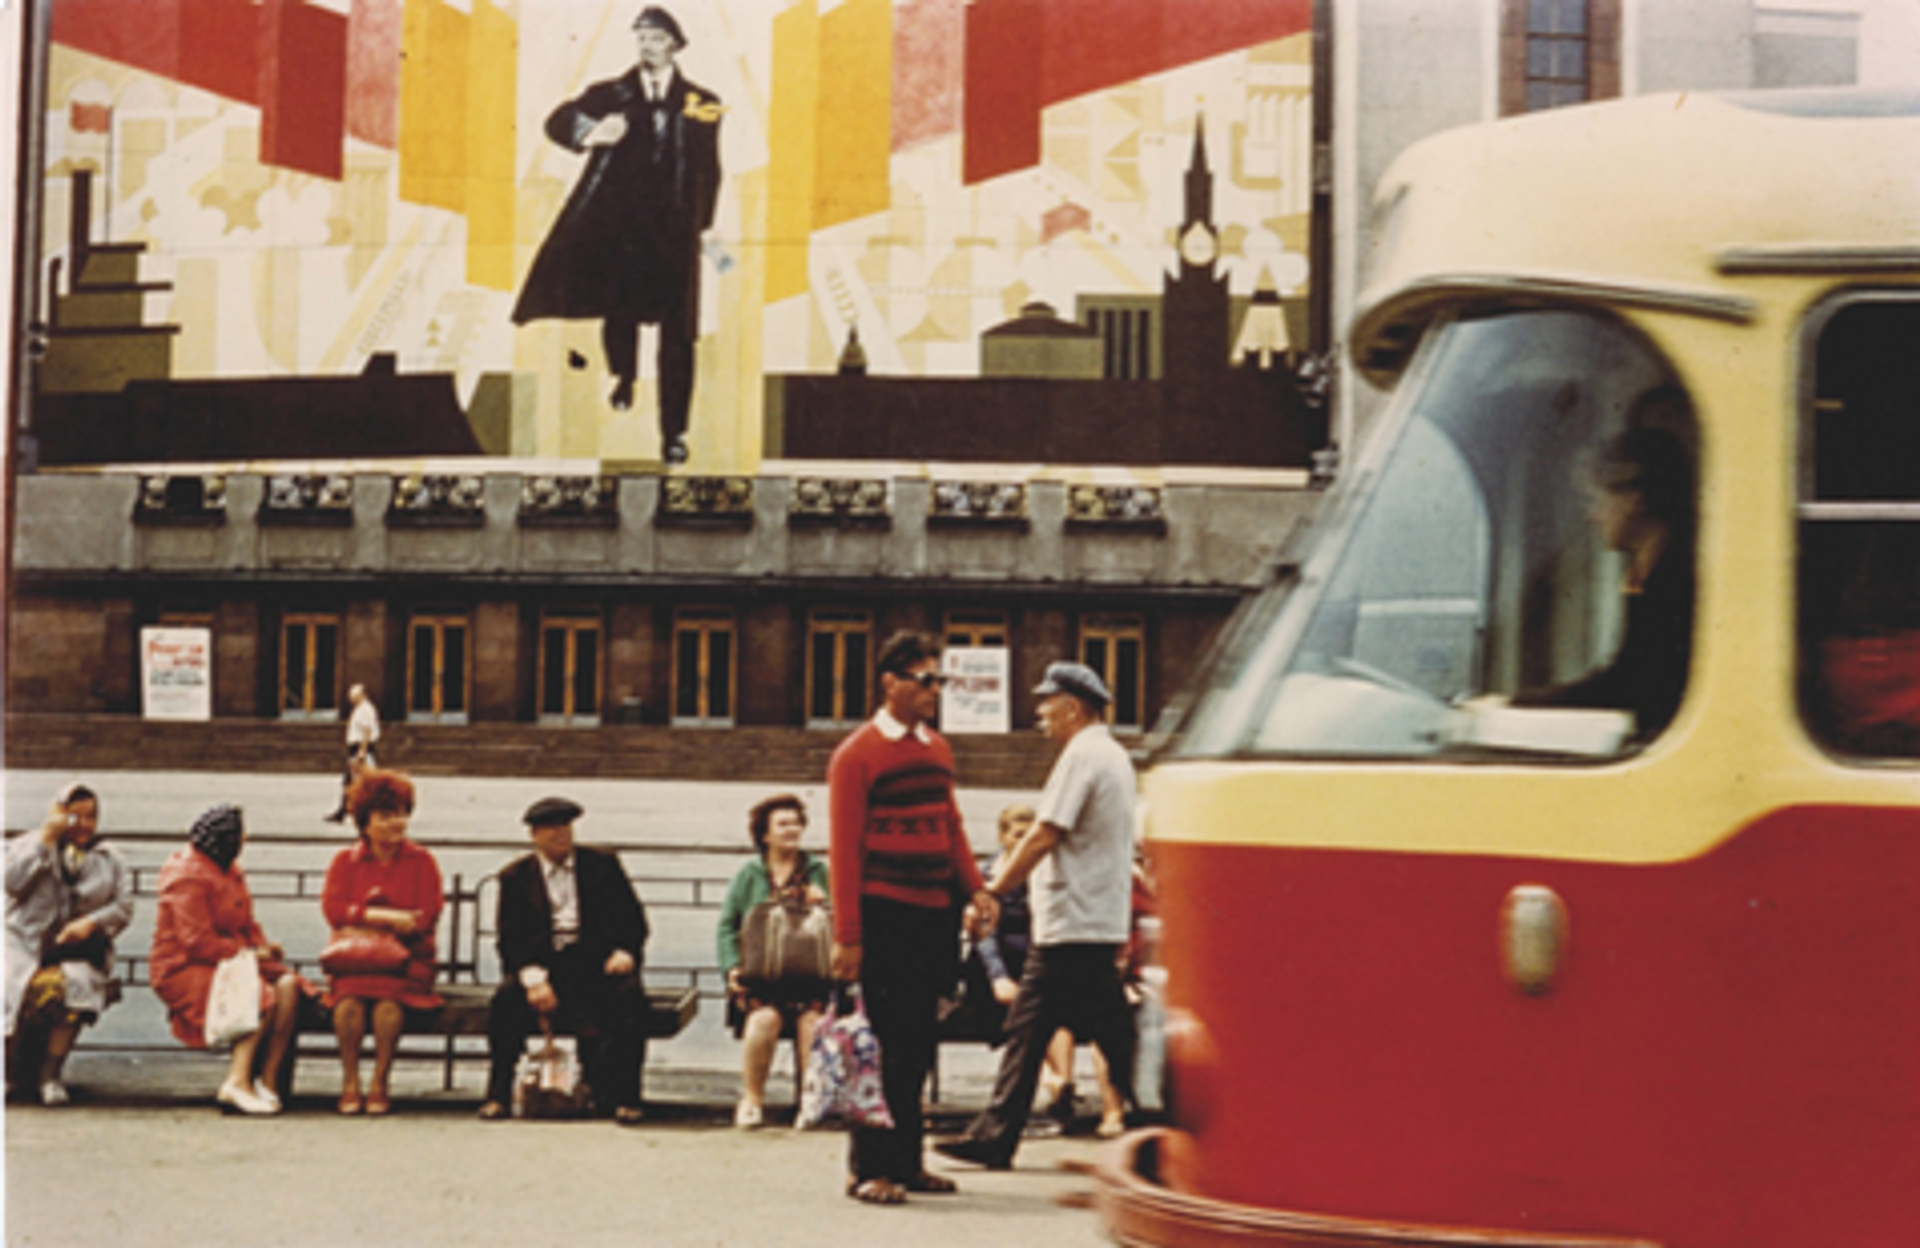 Boris Mikhaïlov, photographie de la série Red, 1968-1975, tirage chromogène. © Boris Mikhaïlov, VG Bild-Kunst, Bonn. Tate, Londres (acquis avec l’aide du Art Fund, avec la contribution de la Wolfson Foundation, et Konstantin Grigorishin, 2011)